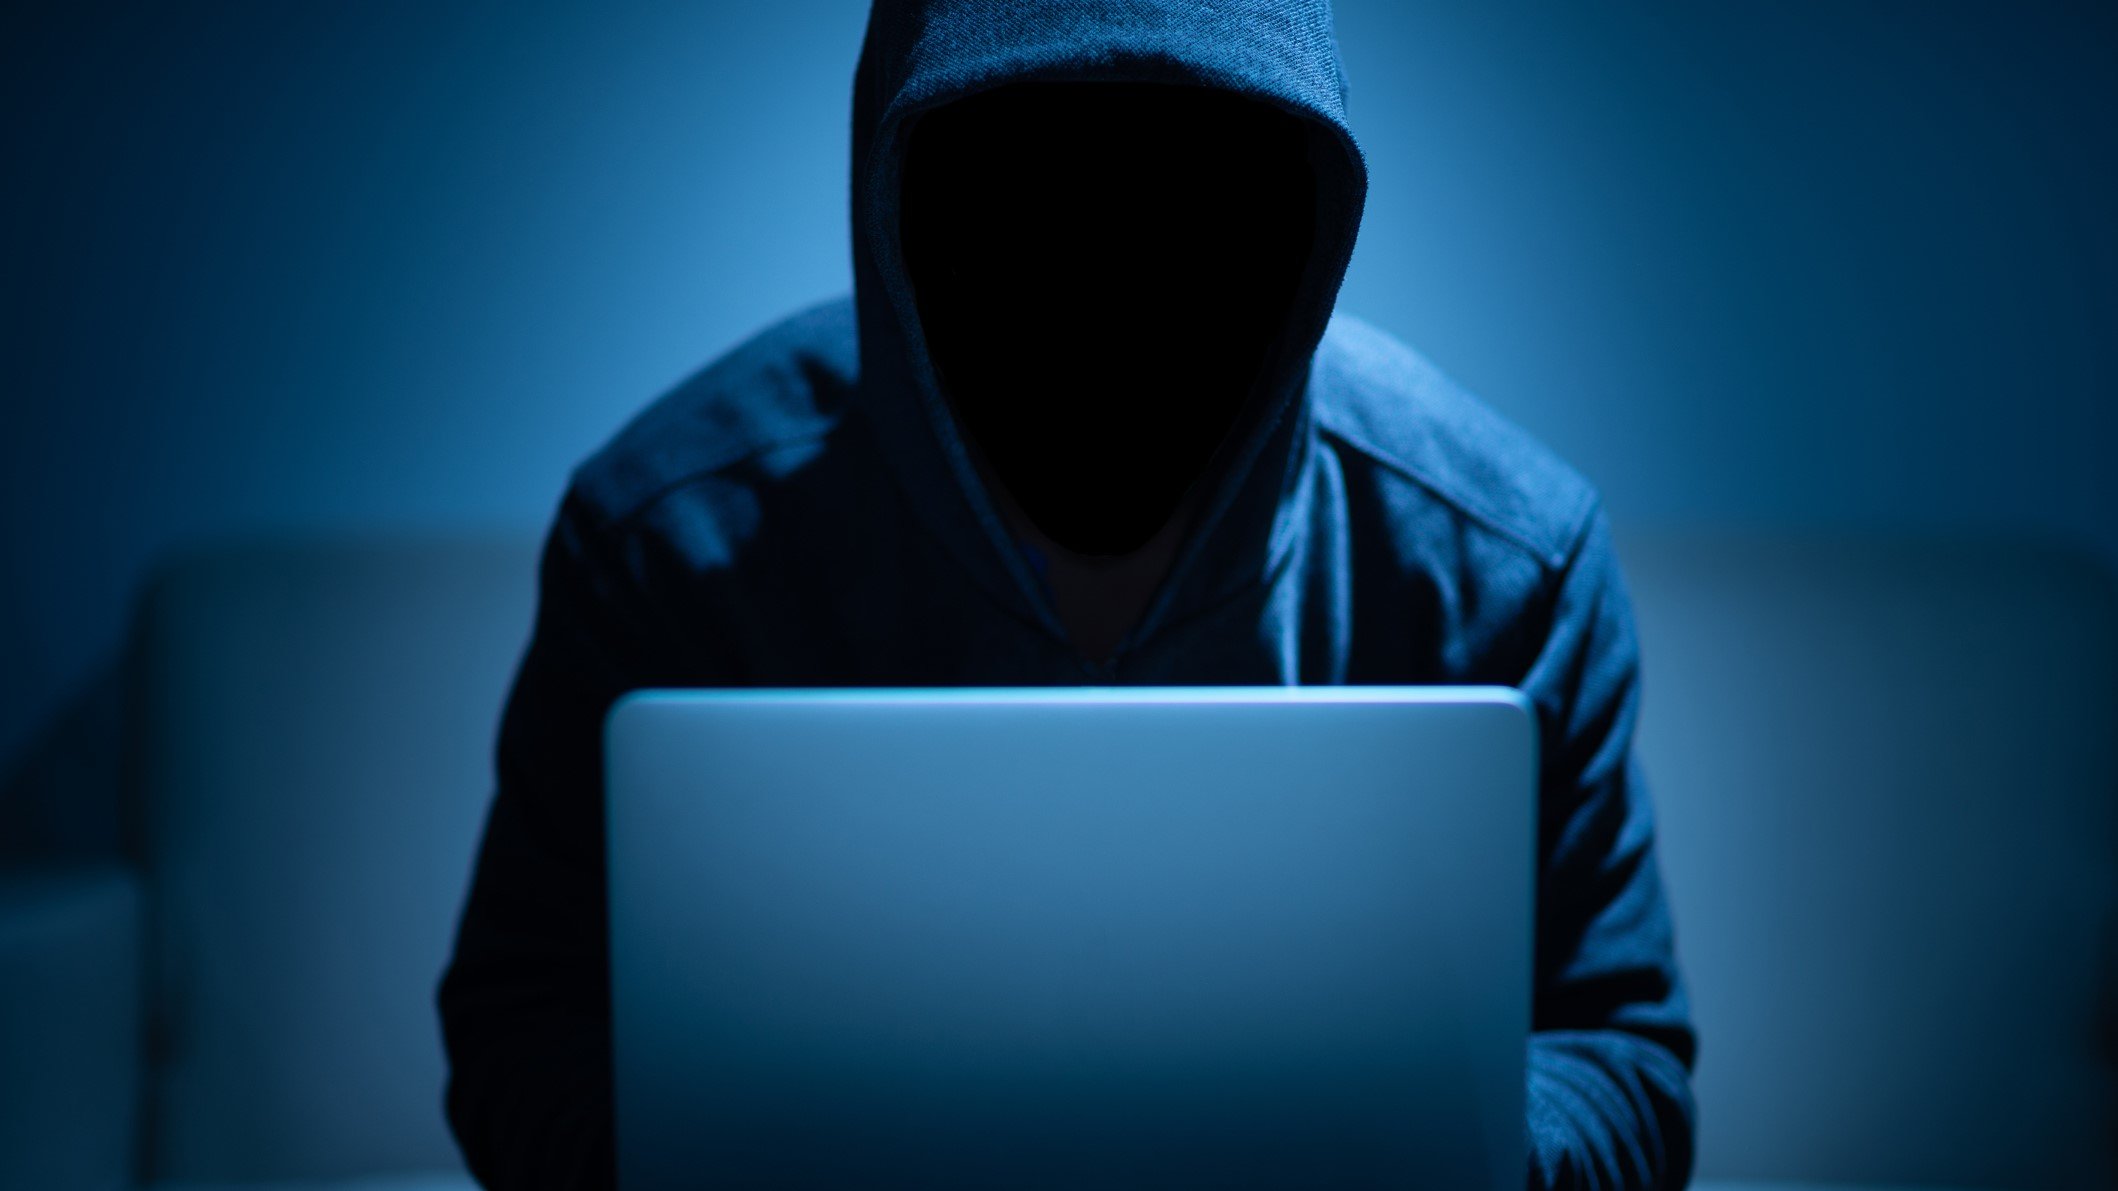 Catfish identity theft hacking hacker hacked internet